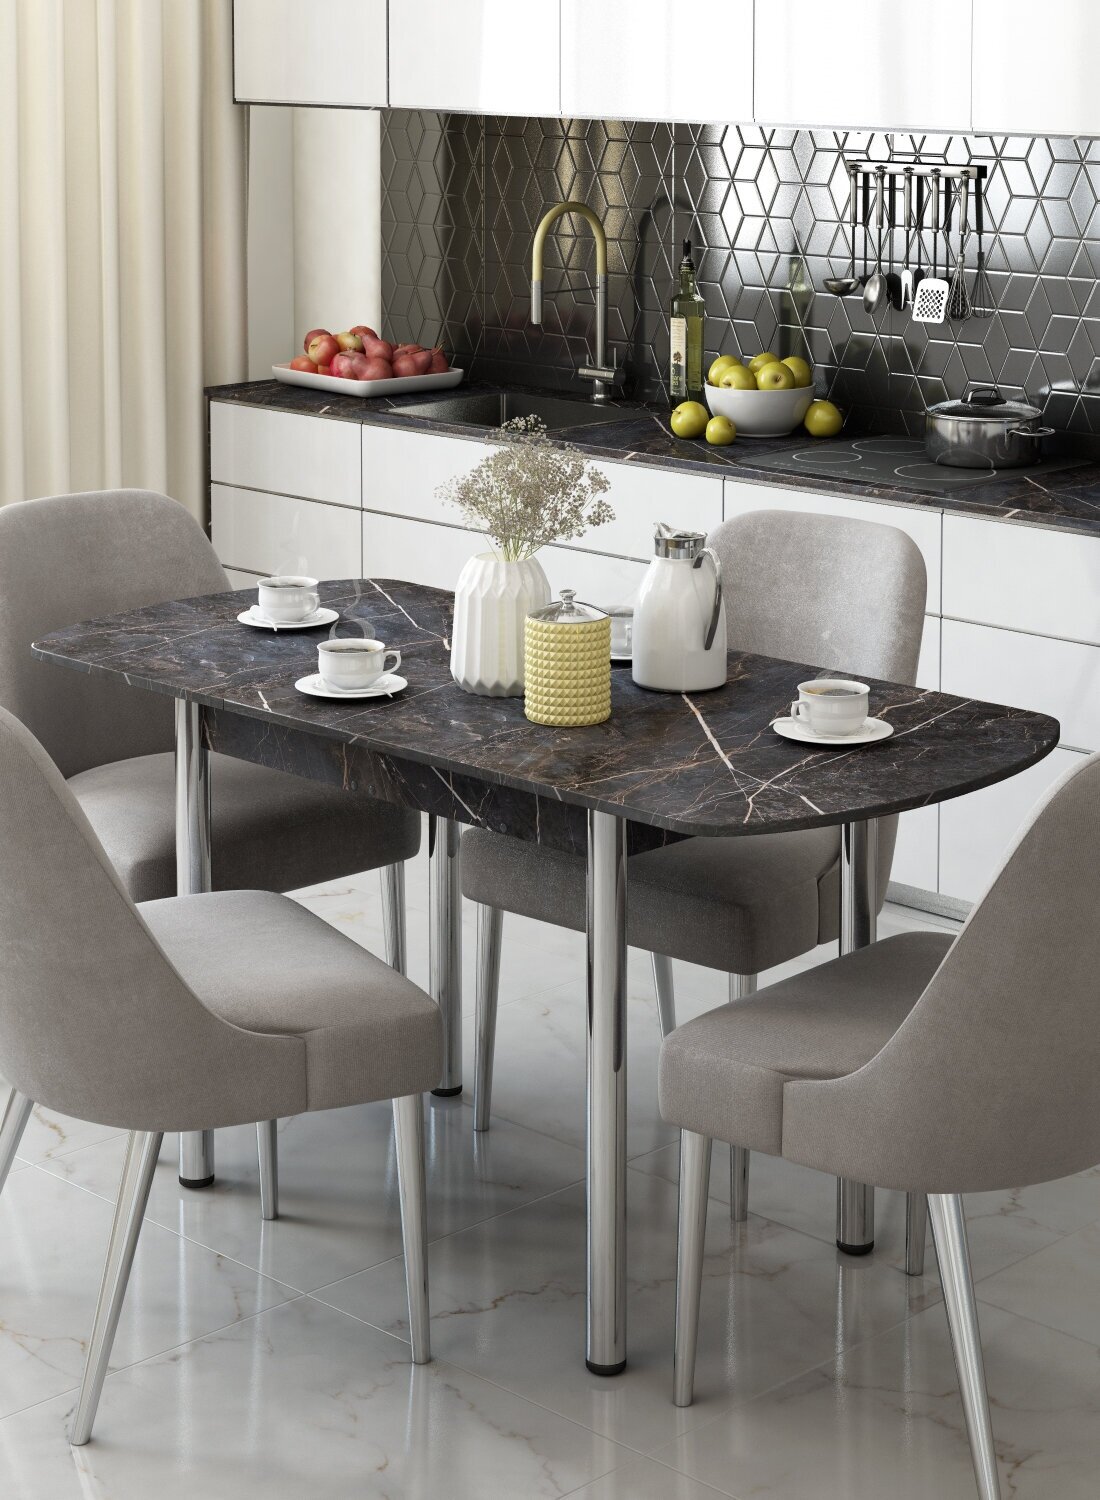 Кухонный стол раздвижной для кухни и столовой из ЛДСП, размер 70х110 см (70х150 см), высота 76 см, REGENT style, цвет файерстоун